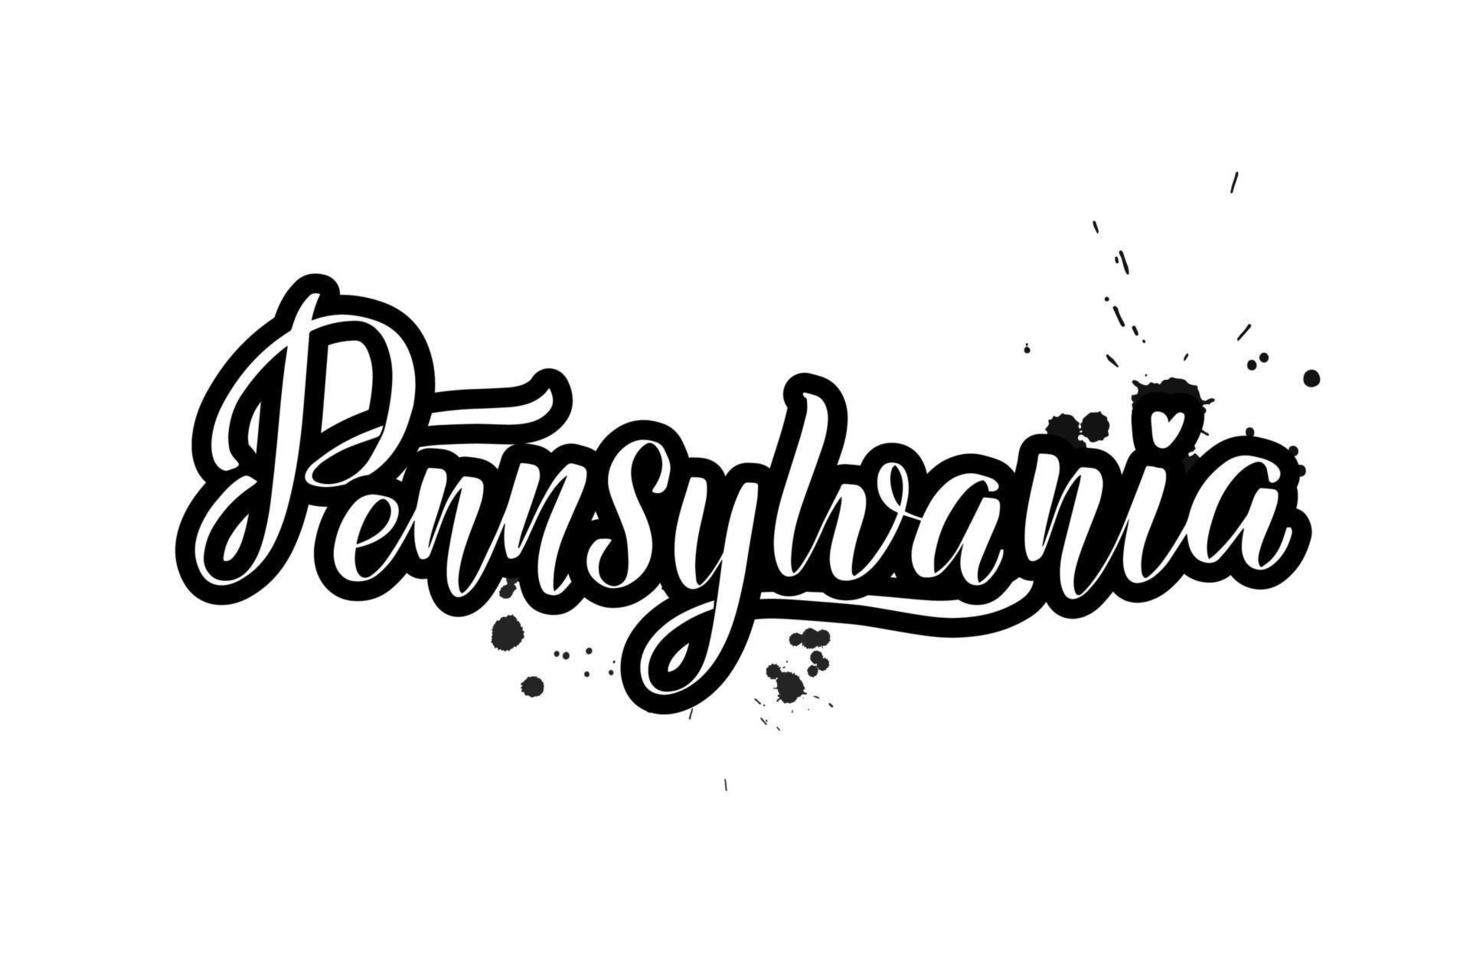 inspirierende handgeschriebene pinselbeschriftung pennsylvania. vektorkalligraphieillustration lokalisiert auf weißem hintergrund. typografie für banner, abzeichen, postkarten, t-shirts, drucke, poster. vektor